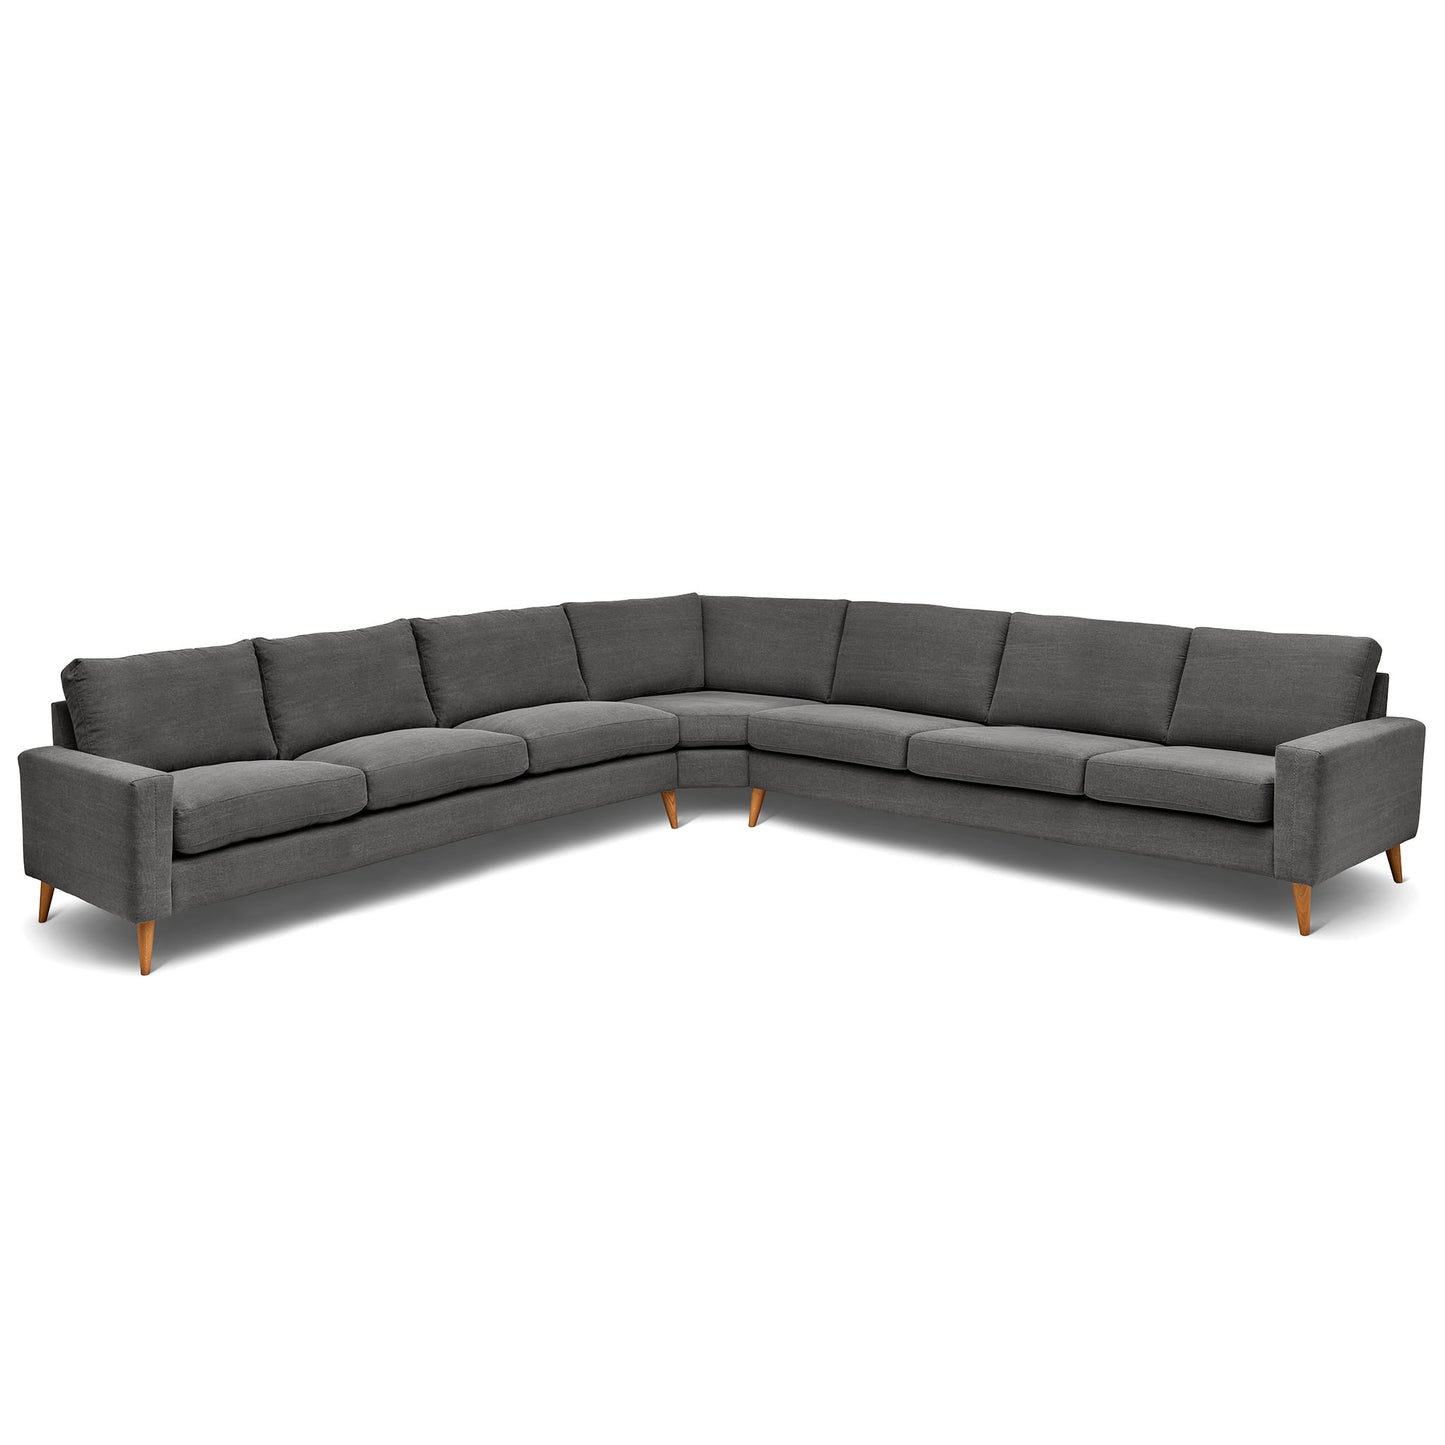 Stor kvadratisk hörnsoffa med måttet 360x360 cm. Sittvänlig soffa för äldre i grått tyg